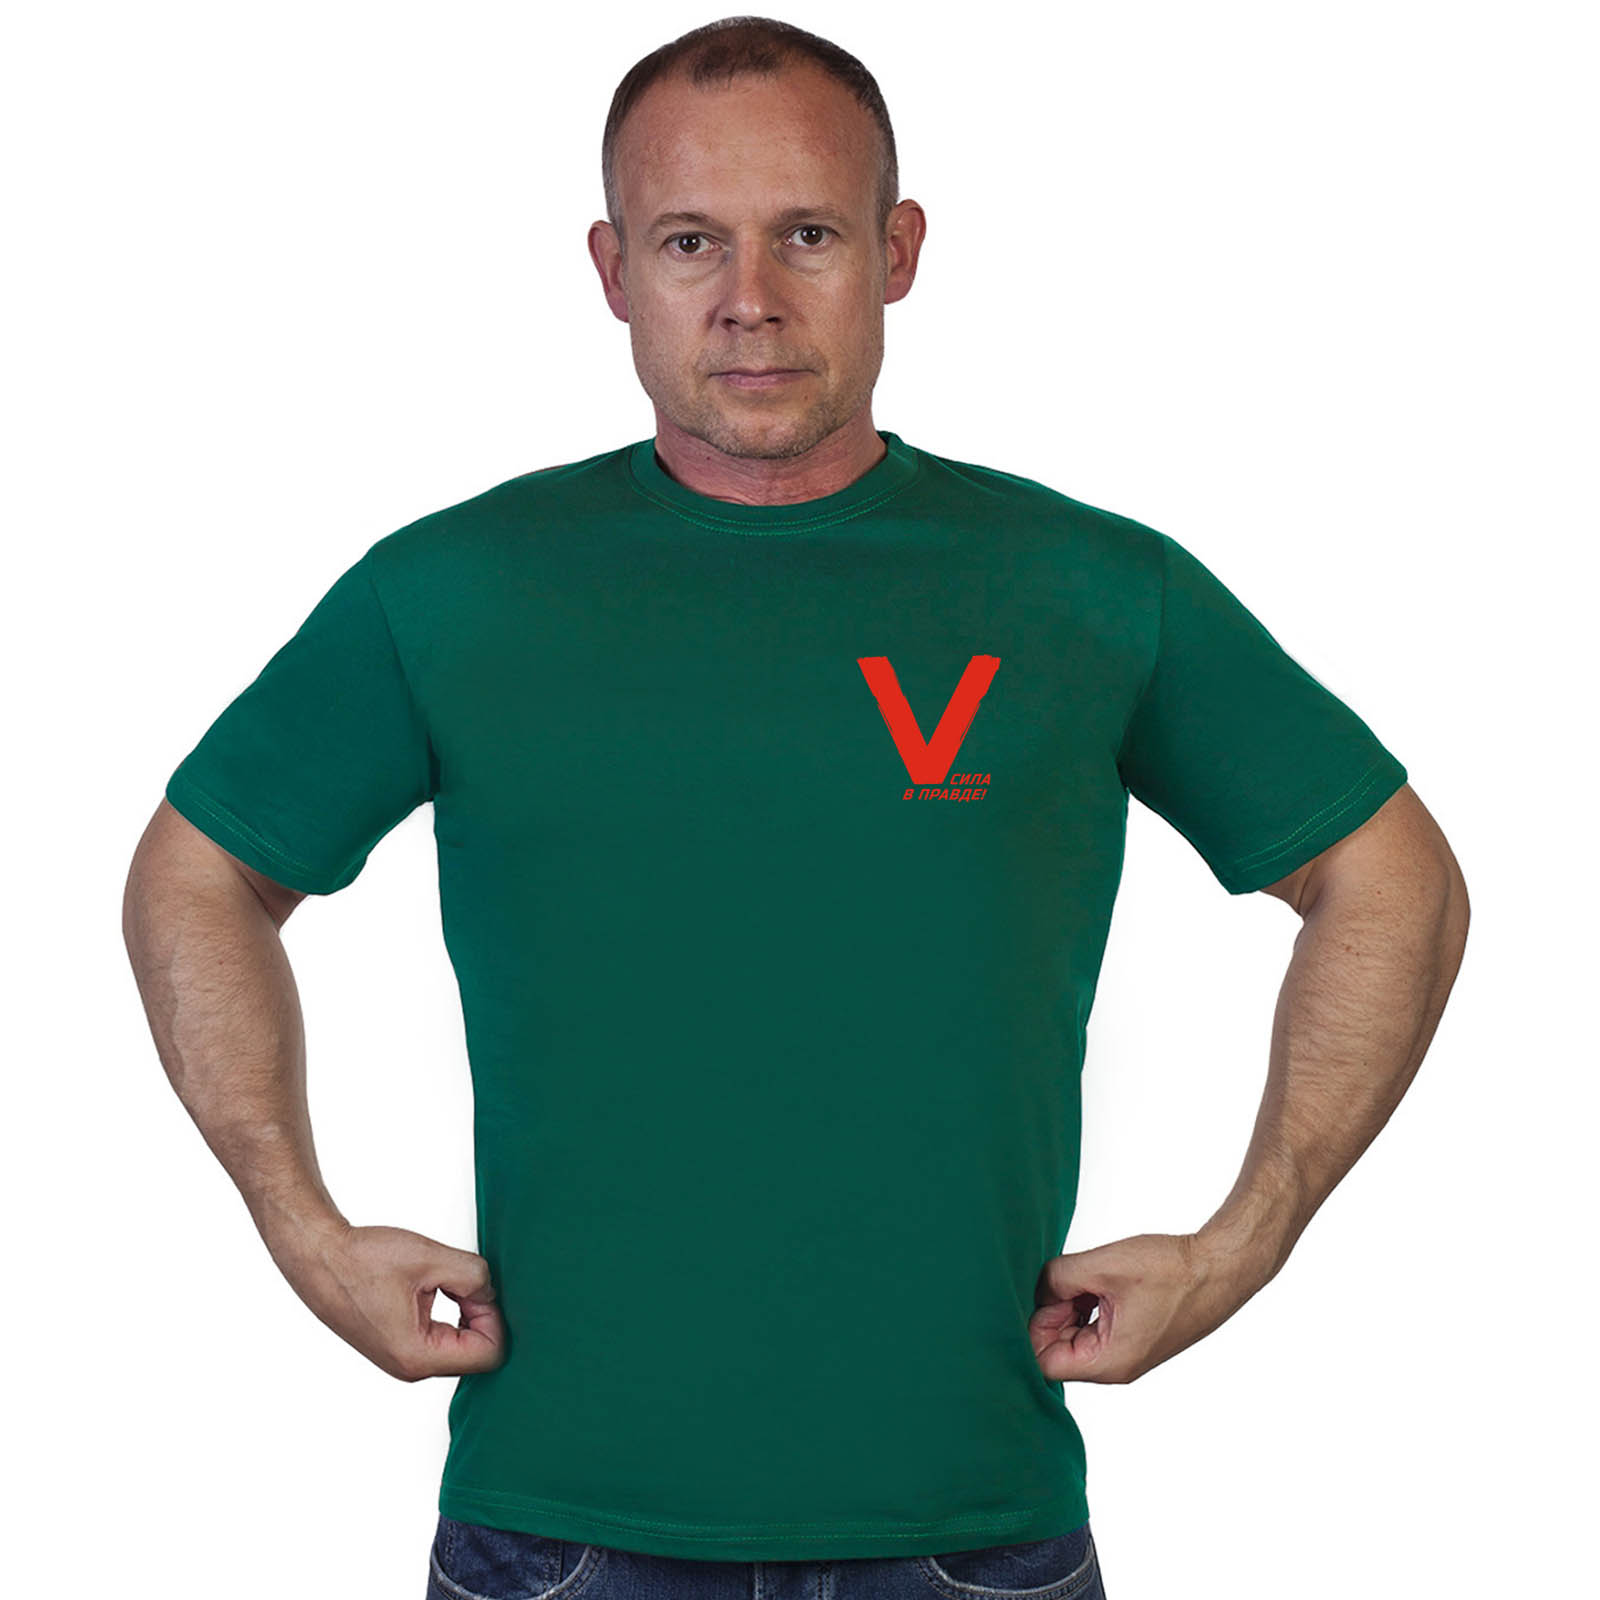 Зелёная футболка с термотрансфером V "Сила в правде!"